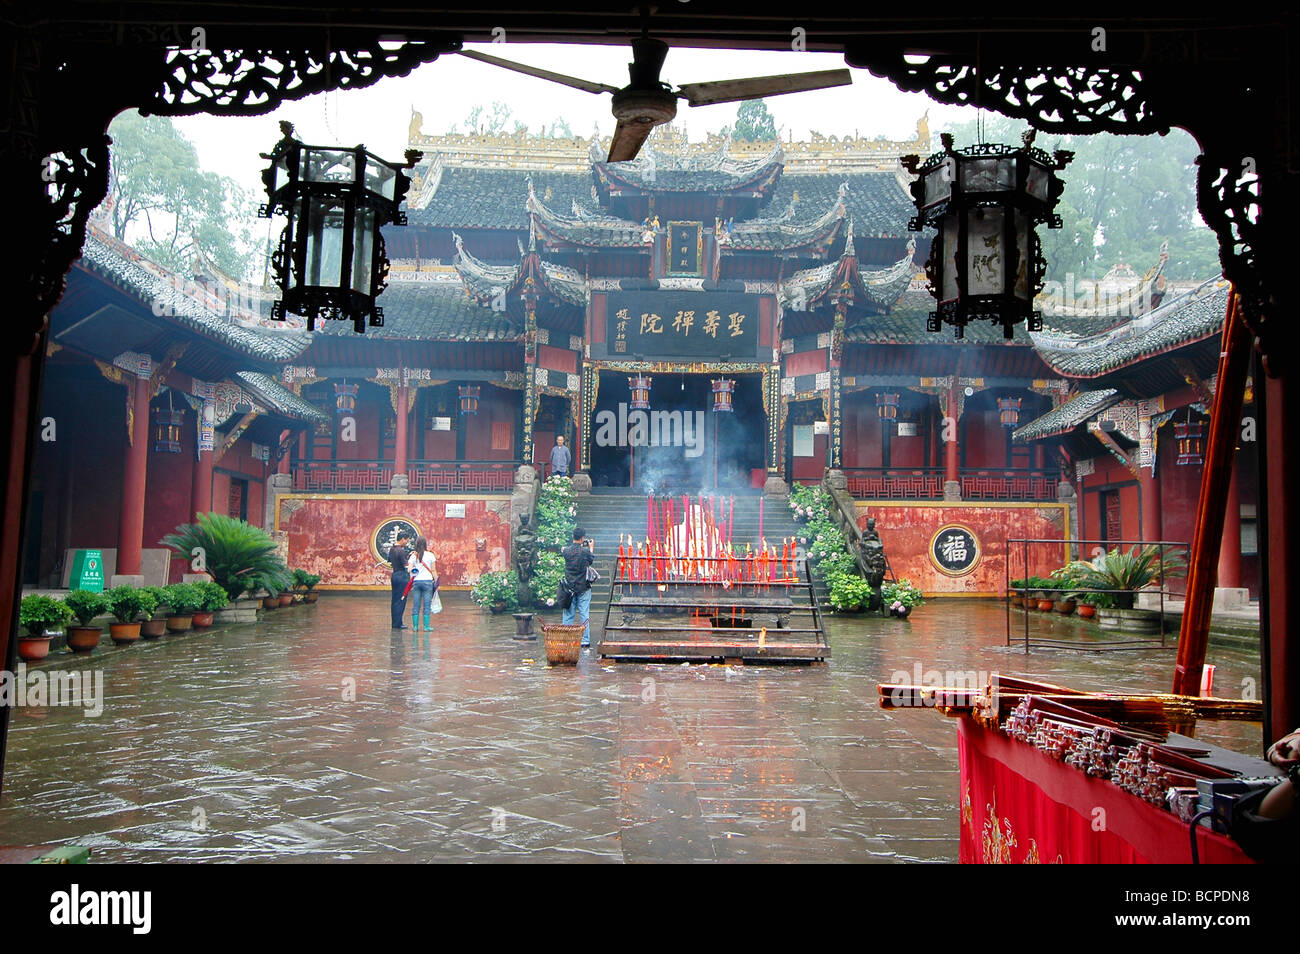 Entrance hall of Shengshou Temple, Dazu Grotto, Dazu County, Chongqing, China Stock Photo